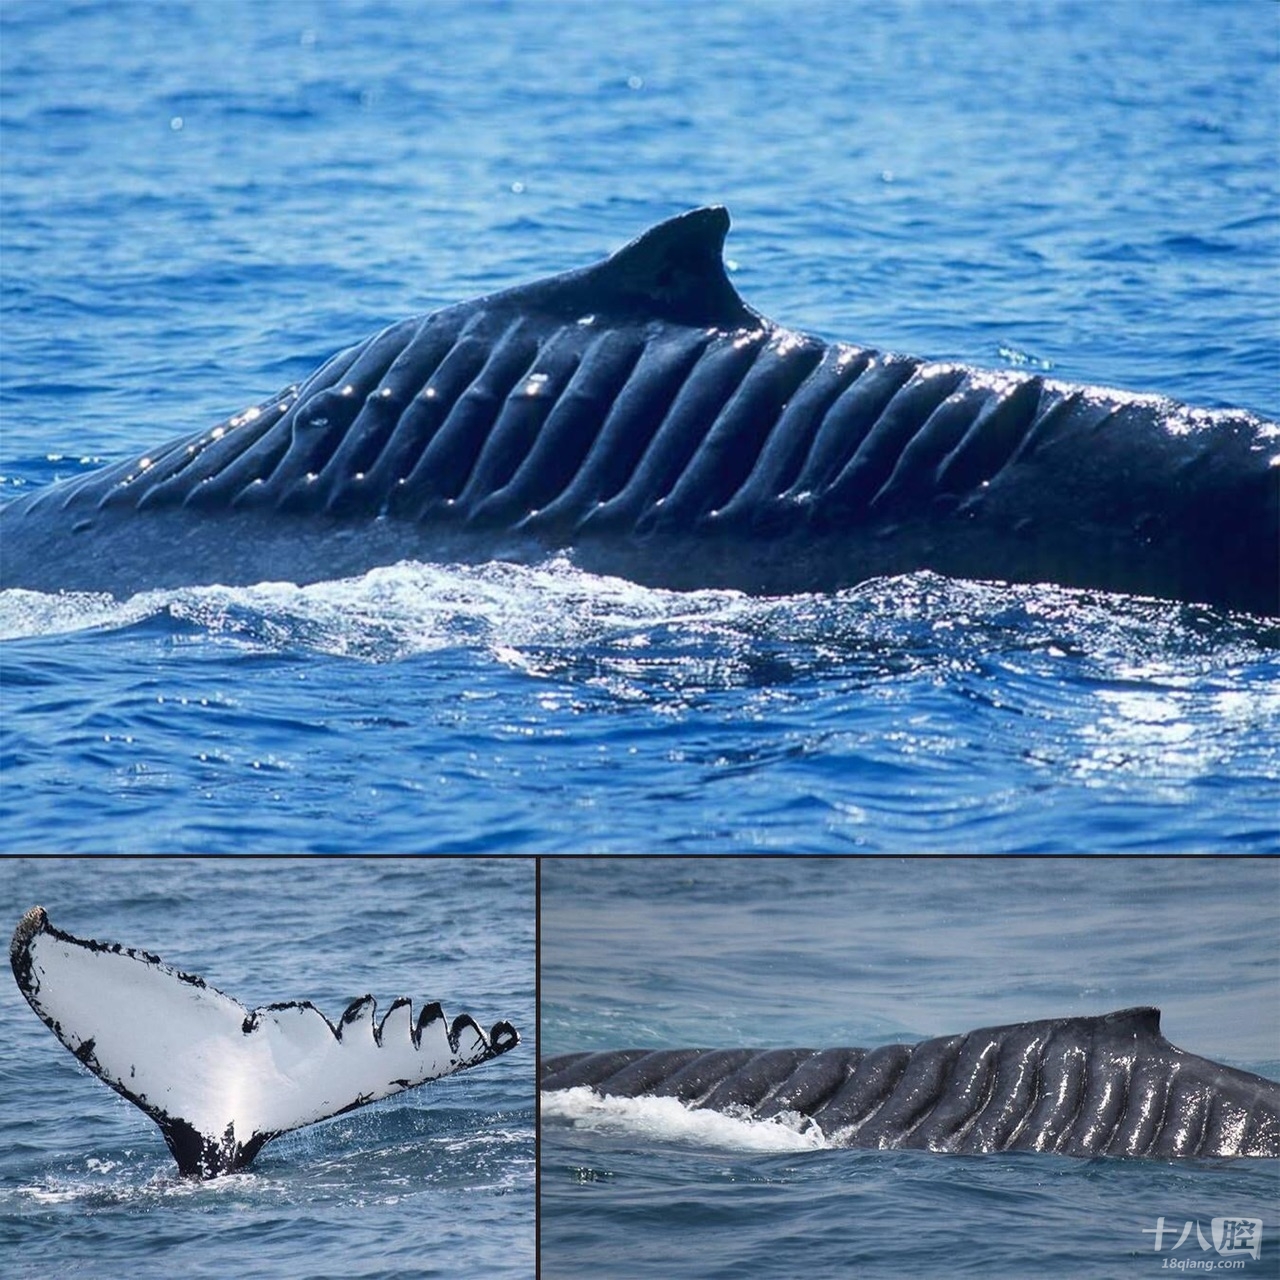 微博上看到一张震撼的照片,一头鲸鱼在2001年被船